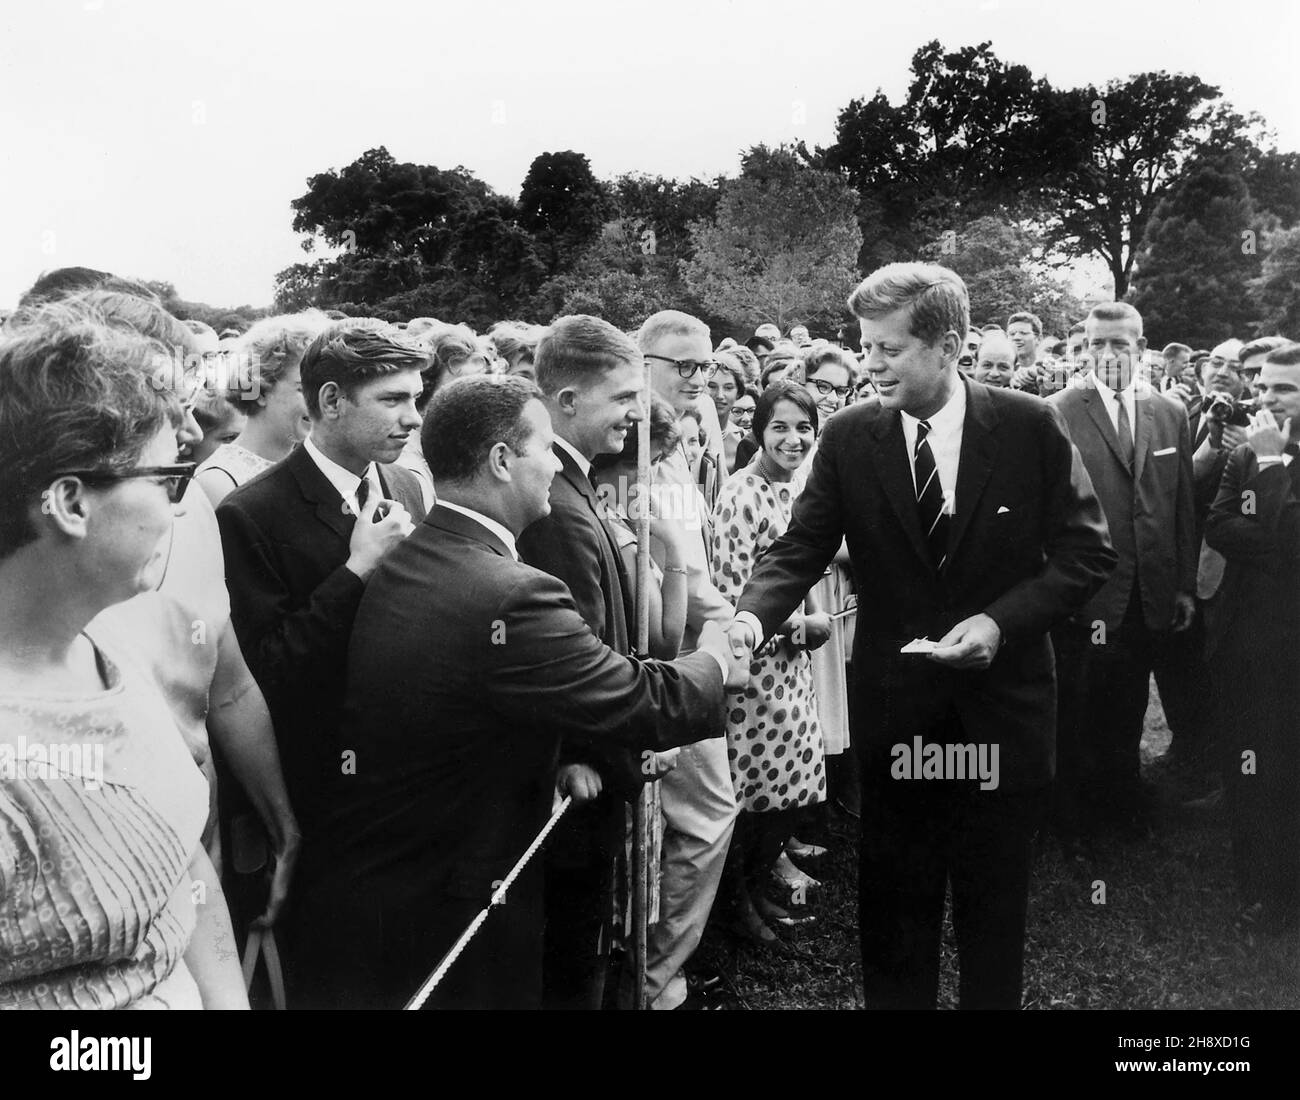 US-Präsident John F. Kennedy begrüßt Freiwillige des Friedenskorps auf dem South Lawn des Weißen Hauses, Washington, D.C., USA, Abbie Rowe, Office White House Photographer, 9. August 1962 Stockfoto